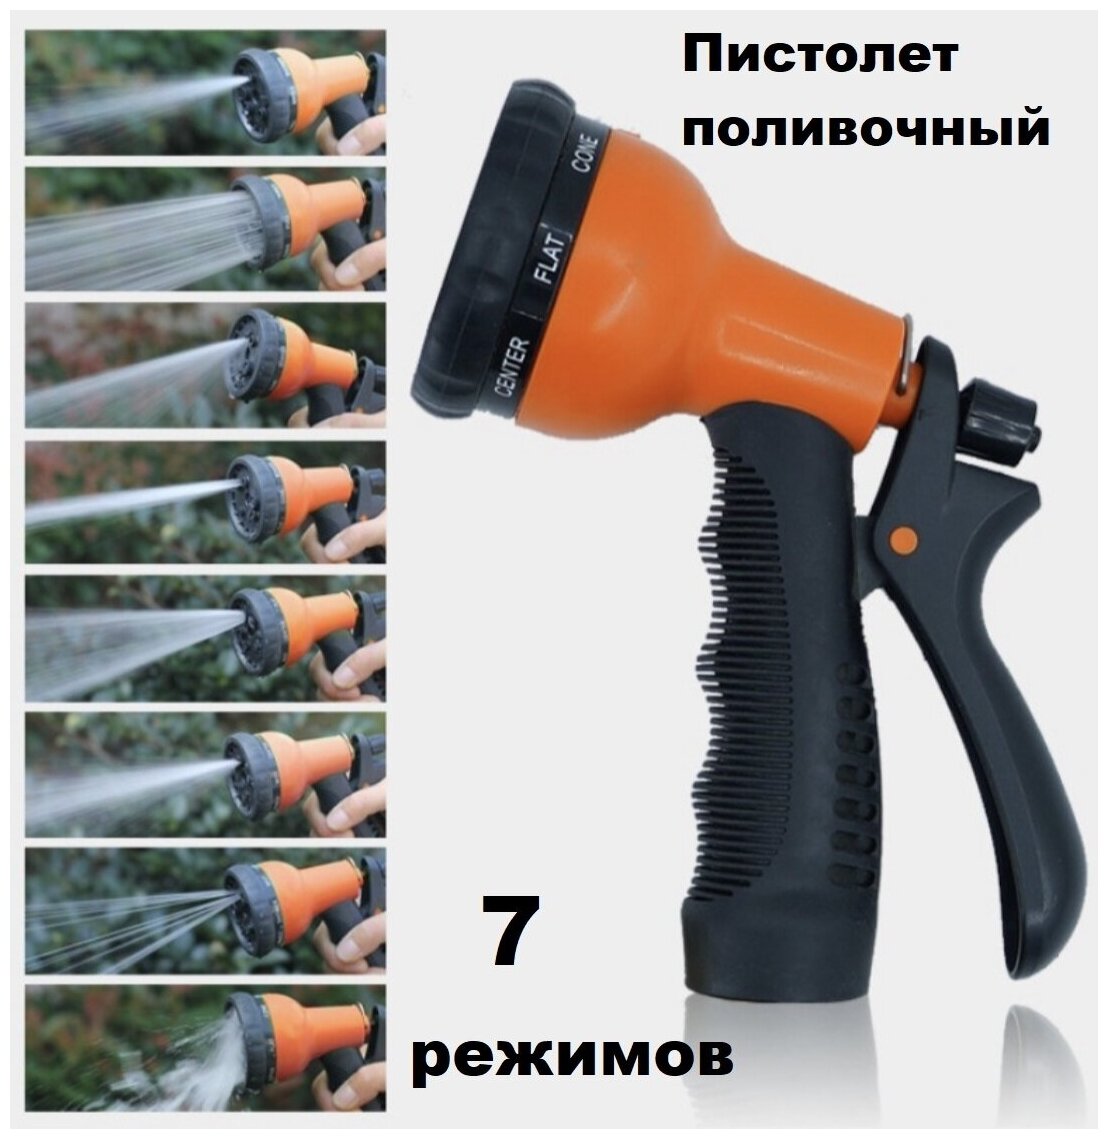 Пистолет-распылитель (7 положений),/оранжевый/для поливочного шланга/поливочный пистолет/садовый распылитель